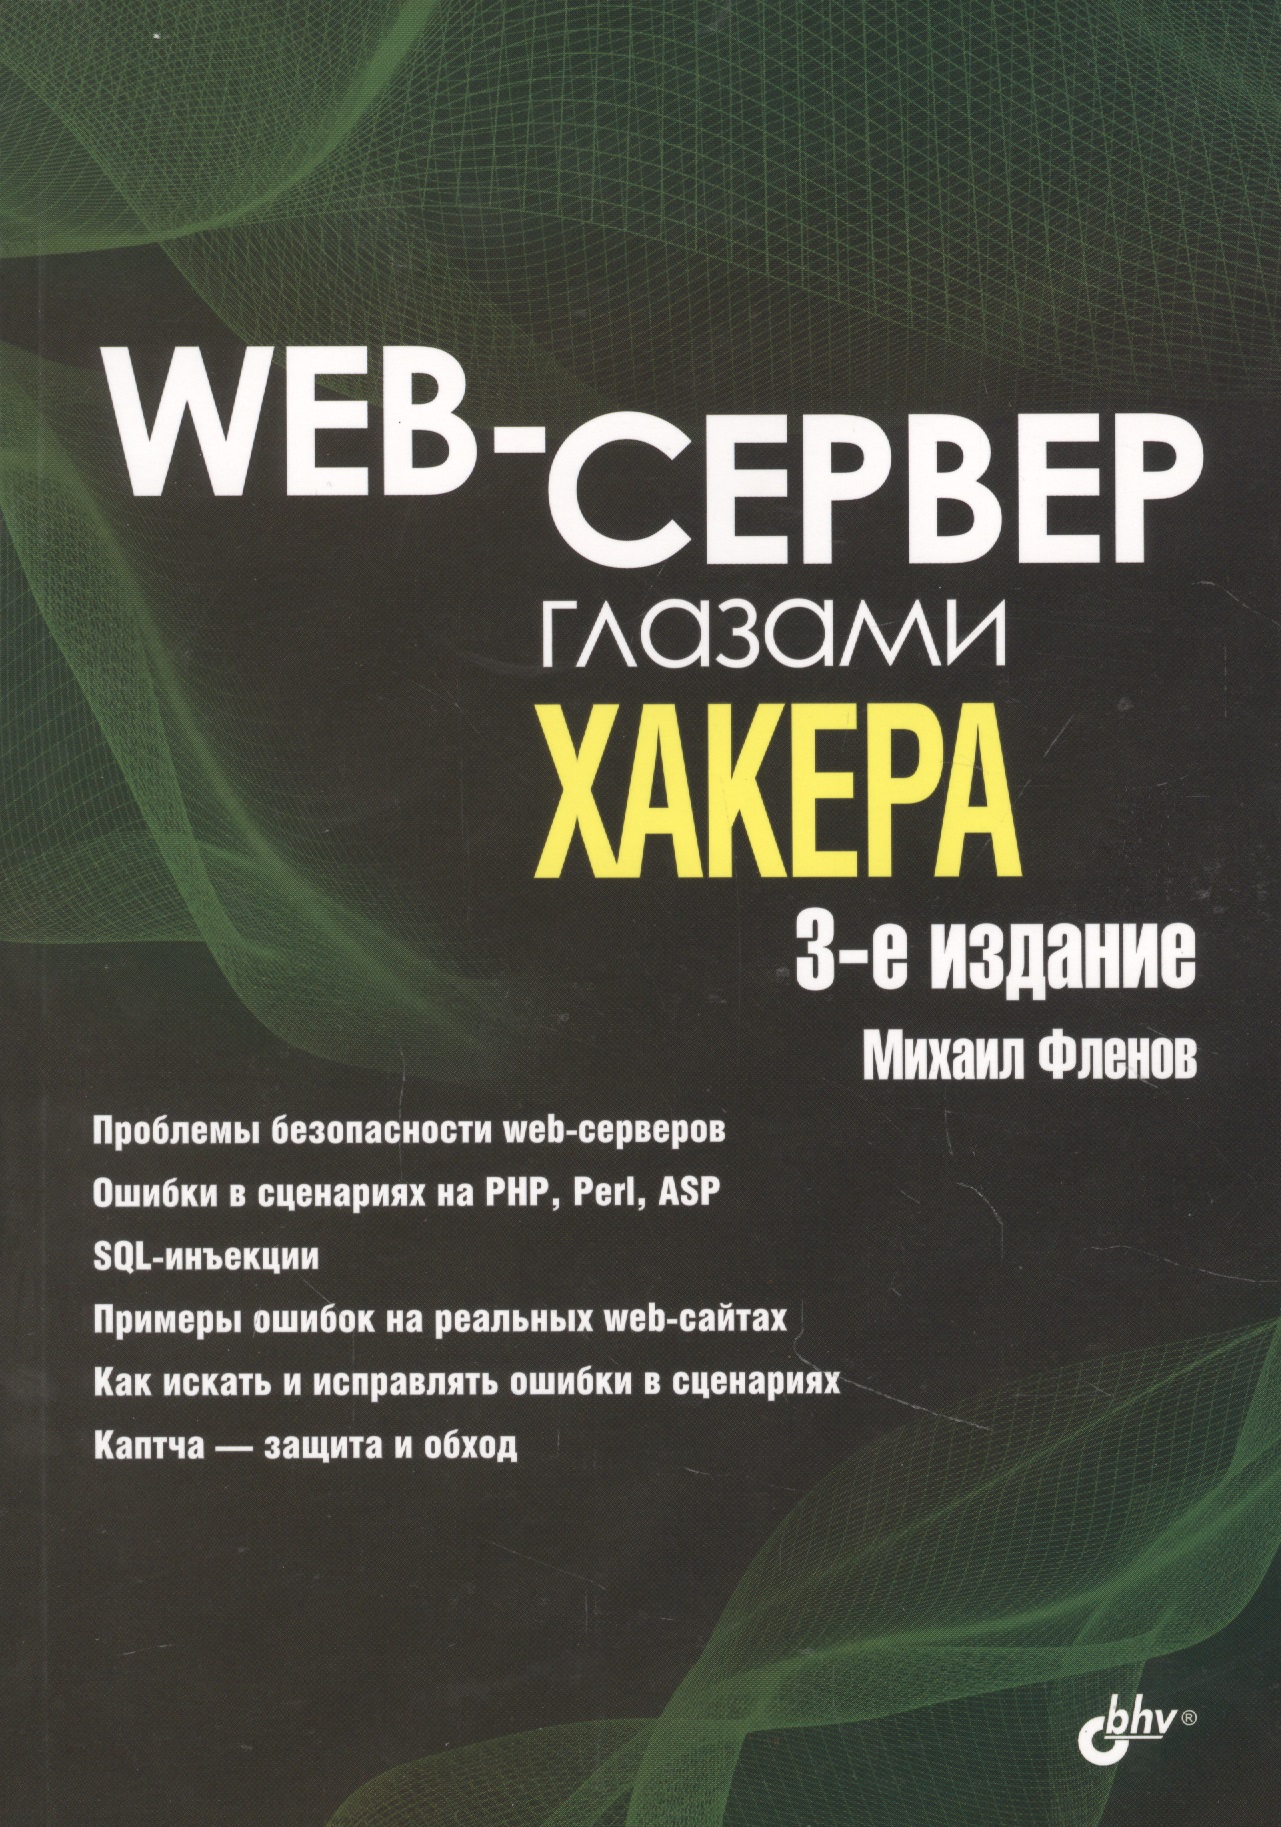 Фленов Михаил Евгеньевич - Web-сервер глазами хакера